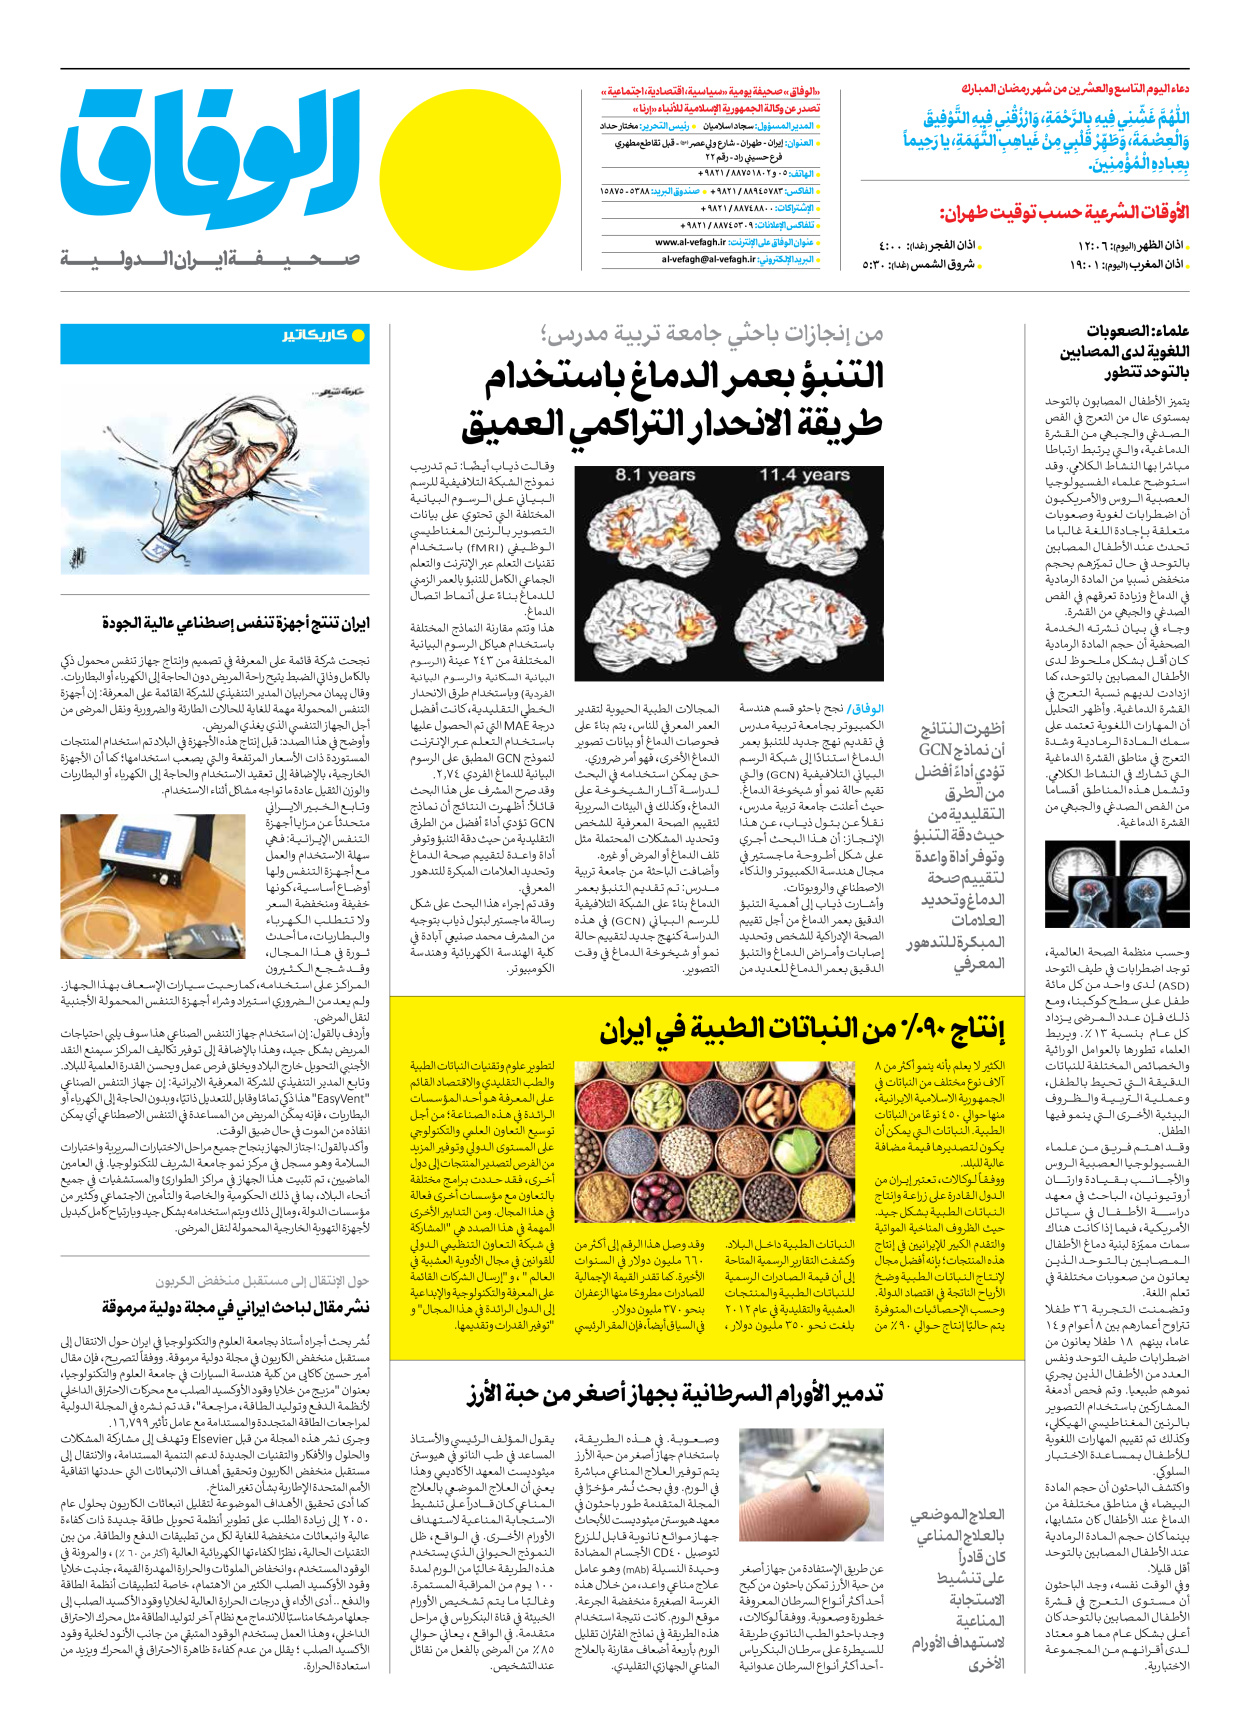 صحیفة ایران الدولیة الوفاق - العدد سبعة آلاف ومائتان وسبعة عشر - ٢٠ أبريل ٢٠٢٣ - الصفحة ۱۲